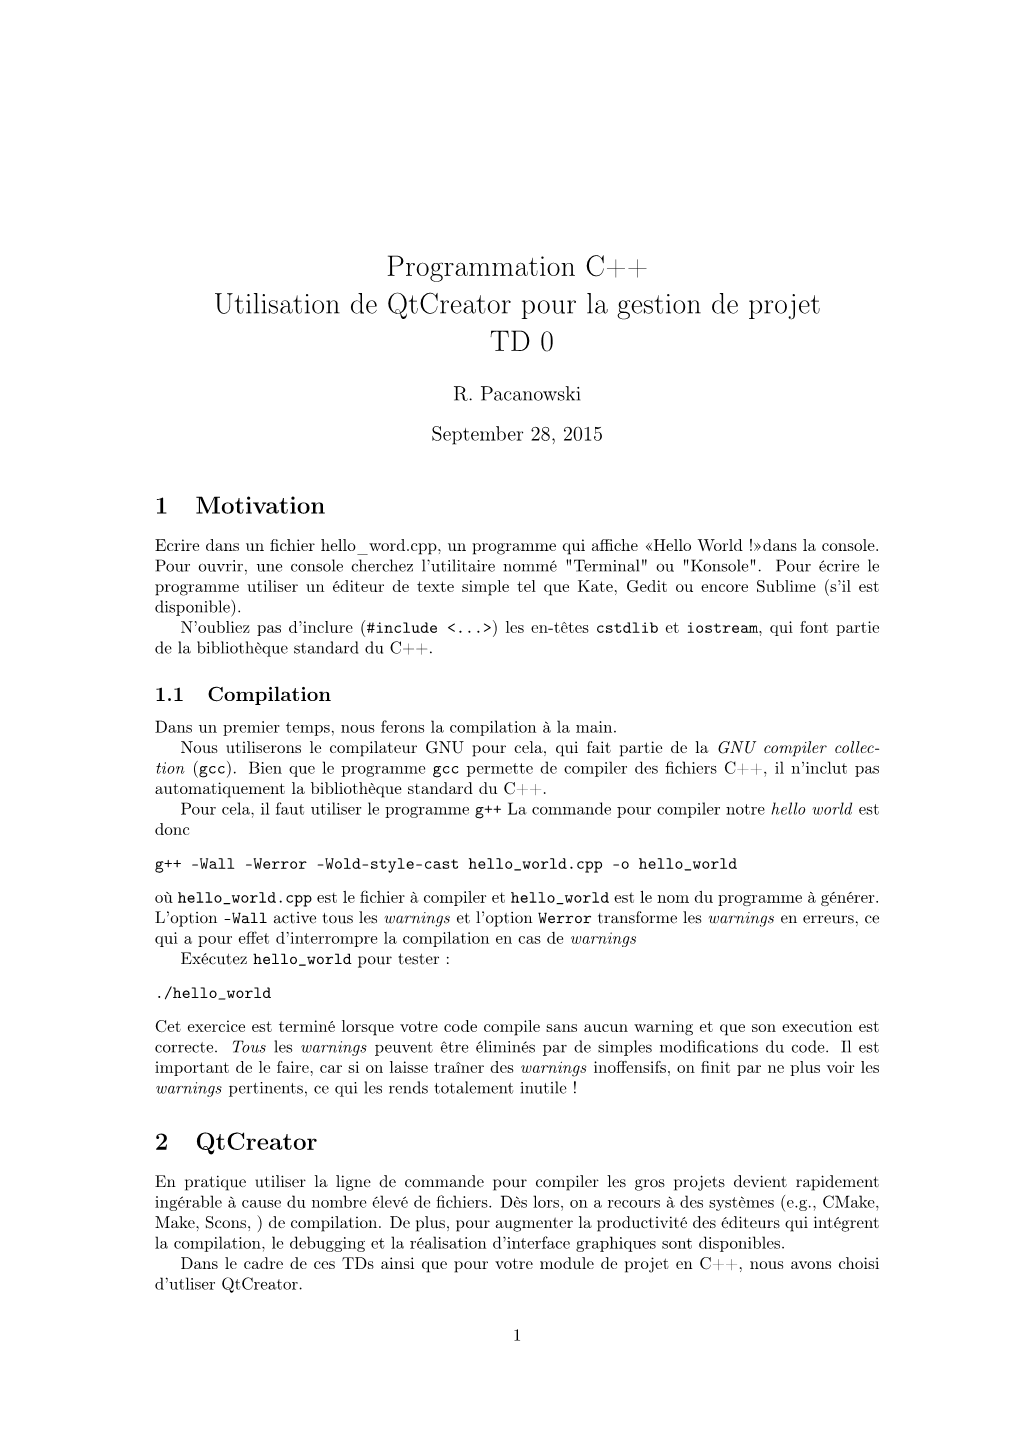 Programmation C++ Utilisation De Qtcreator Pour La Gestion De Projet TD 0